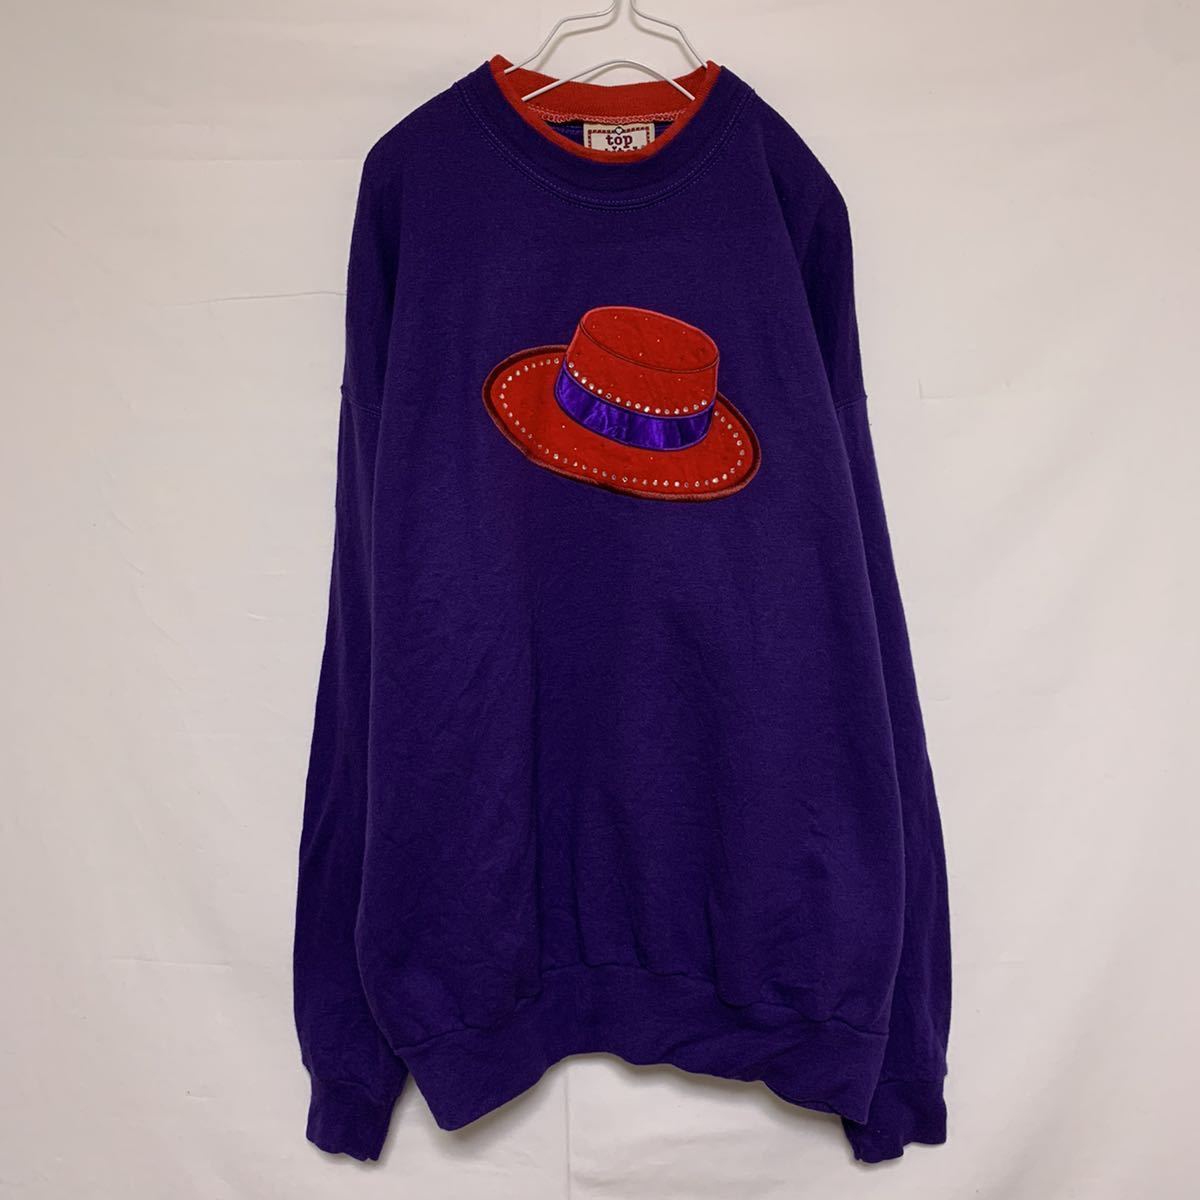 top stitch тренировочный футболка 2 -слойный воротник обратная сторона ворсистый вышивка шляпа шляпа стразы фиолетовый лиловый красный красный 